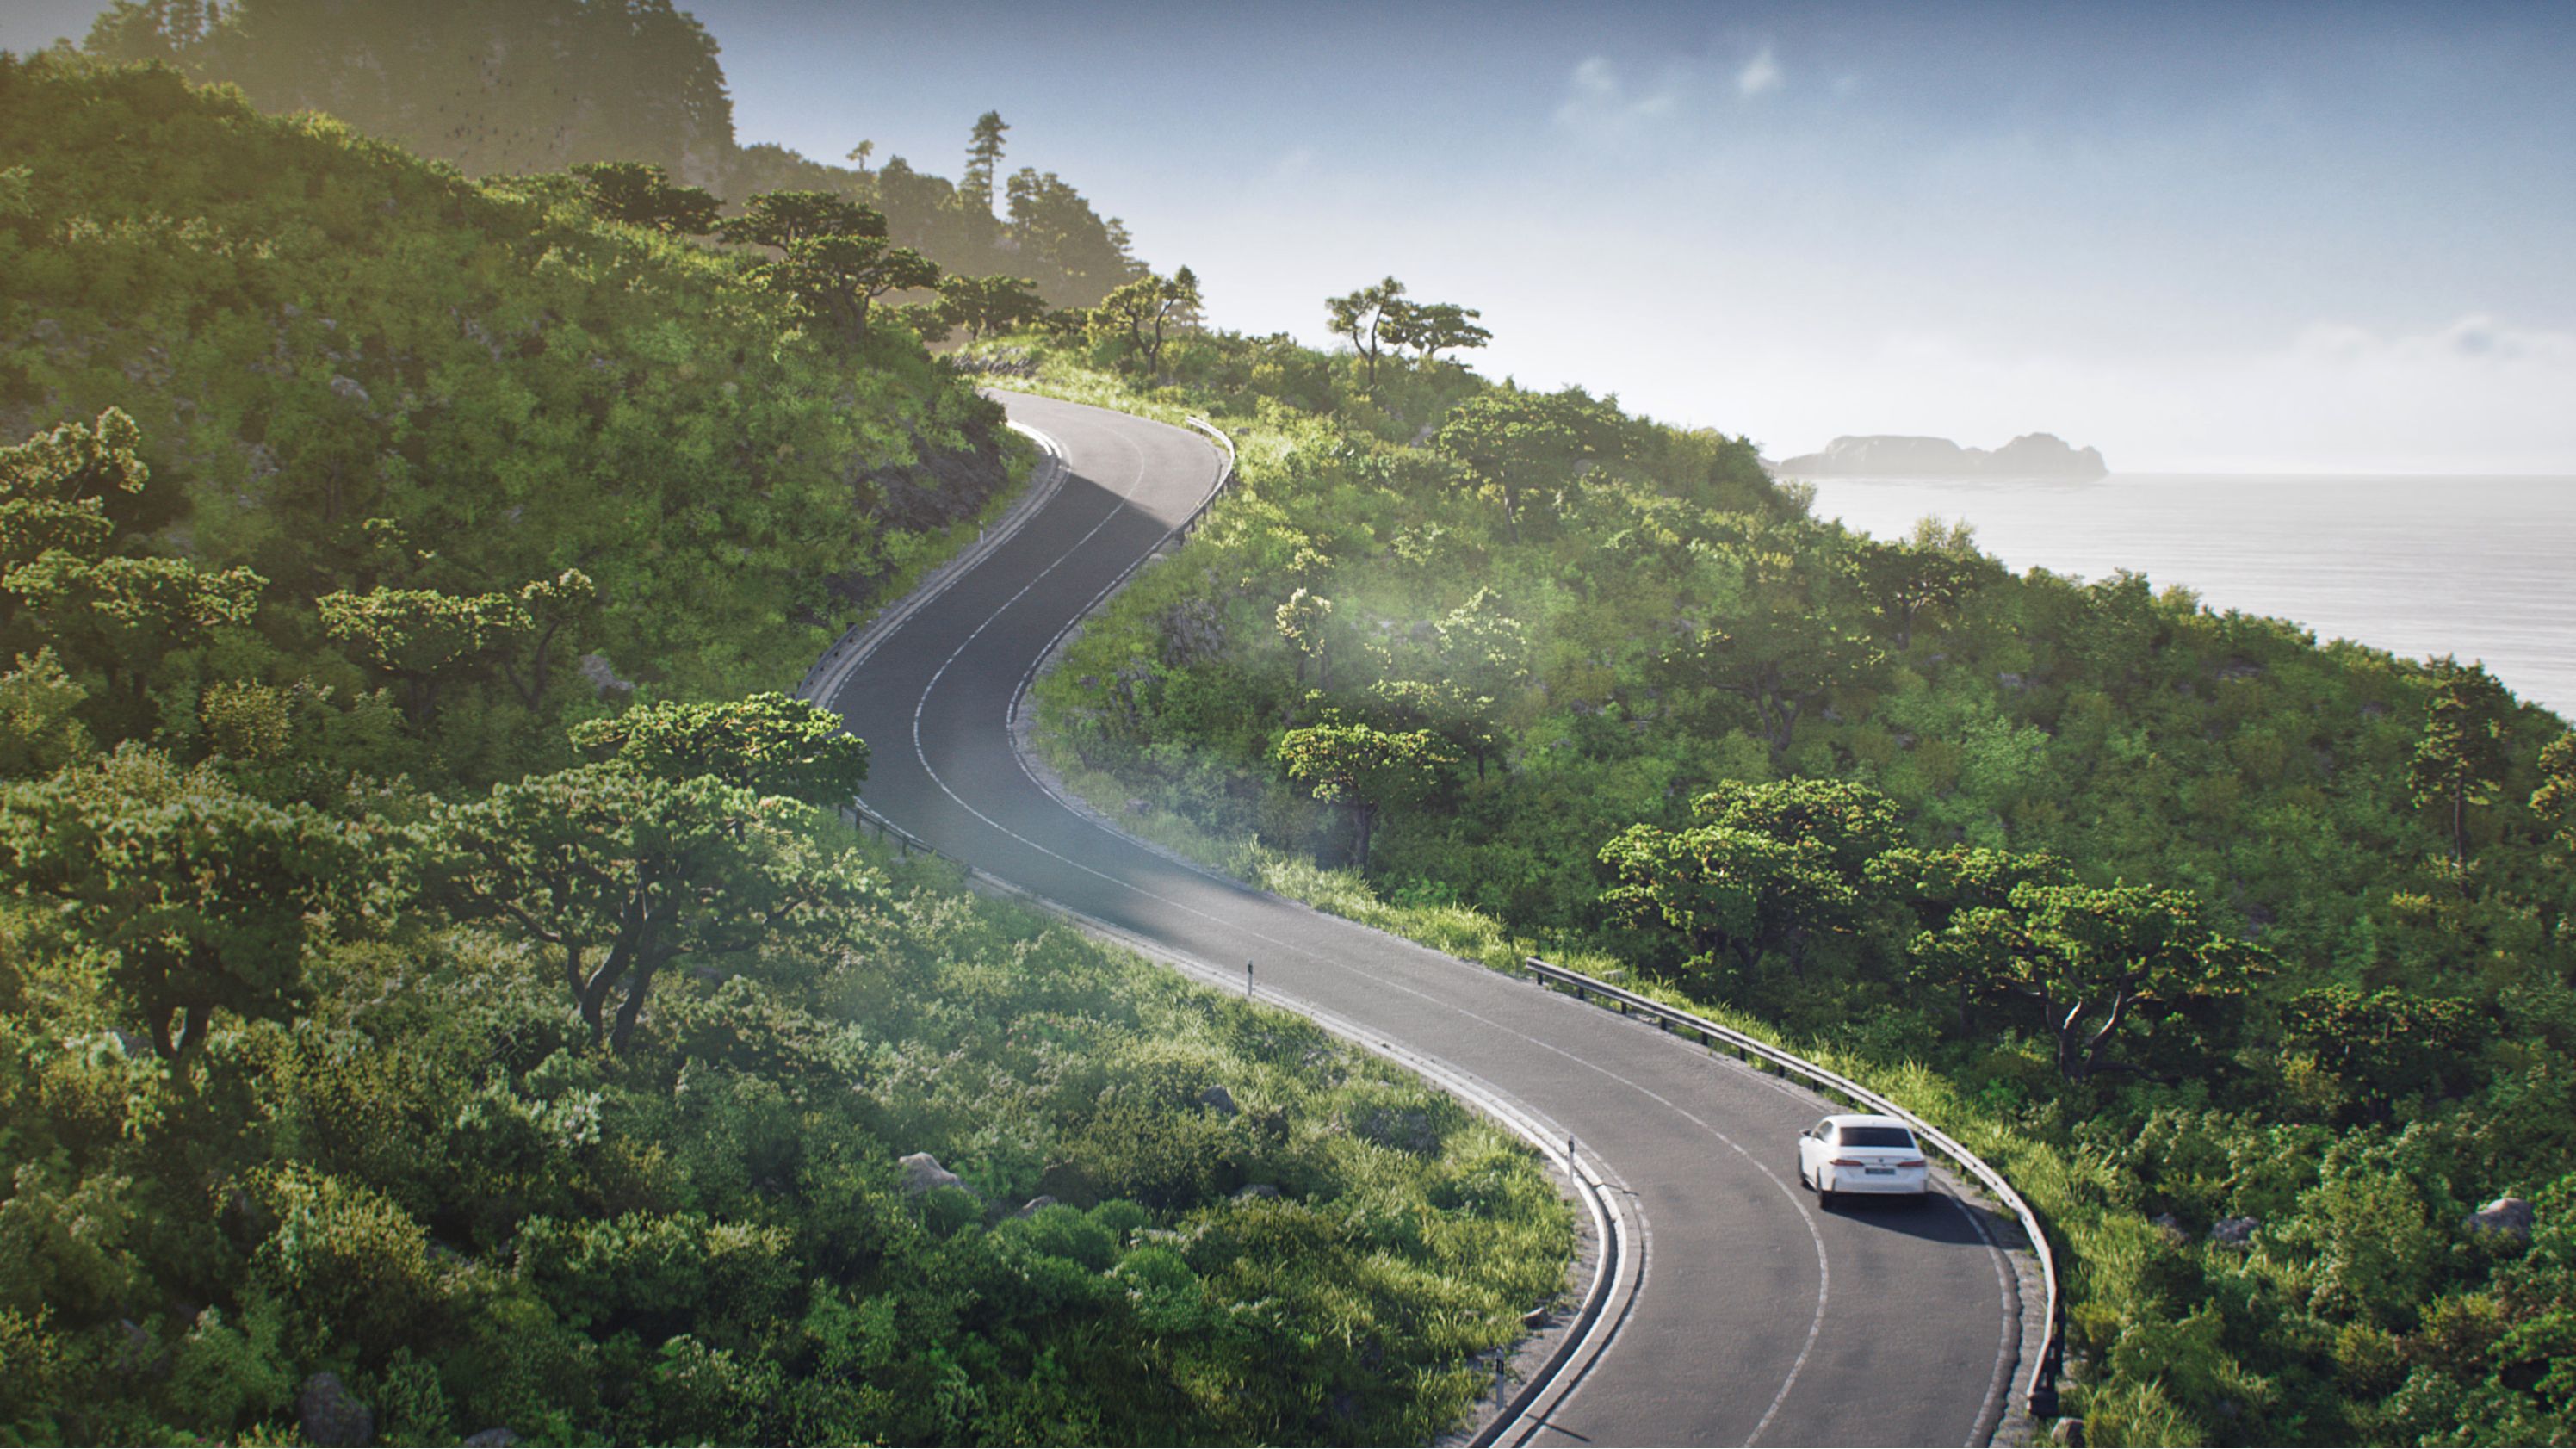 Μοντέλα BMW i, κόμβος βιωσιμότητας – καθαρός, ανηφορικός δρόμος με στροφές μέσα από δασώδη περιοχή, κατά μήκος ακτής